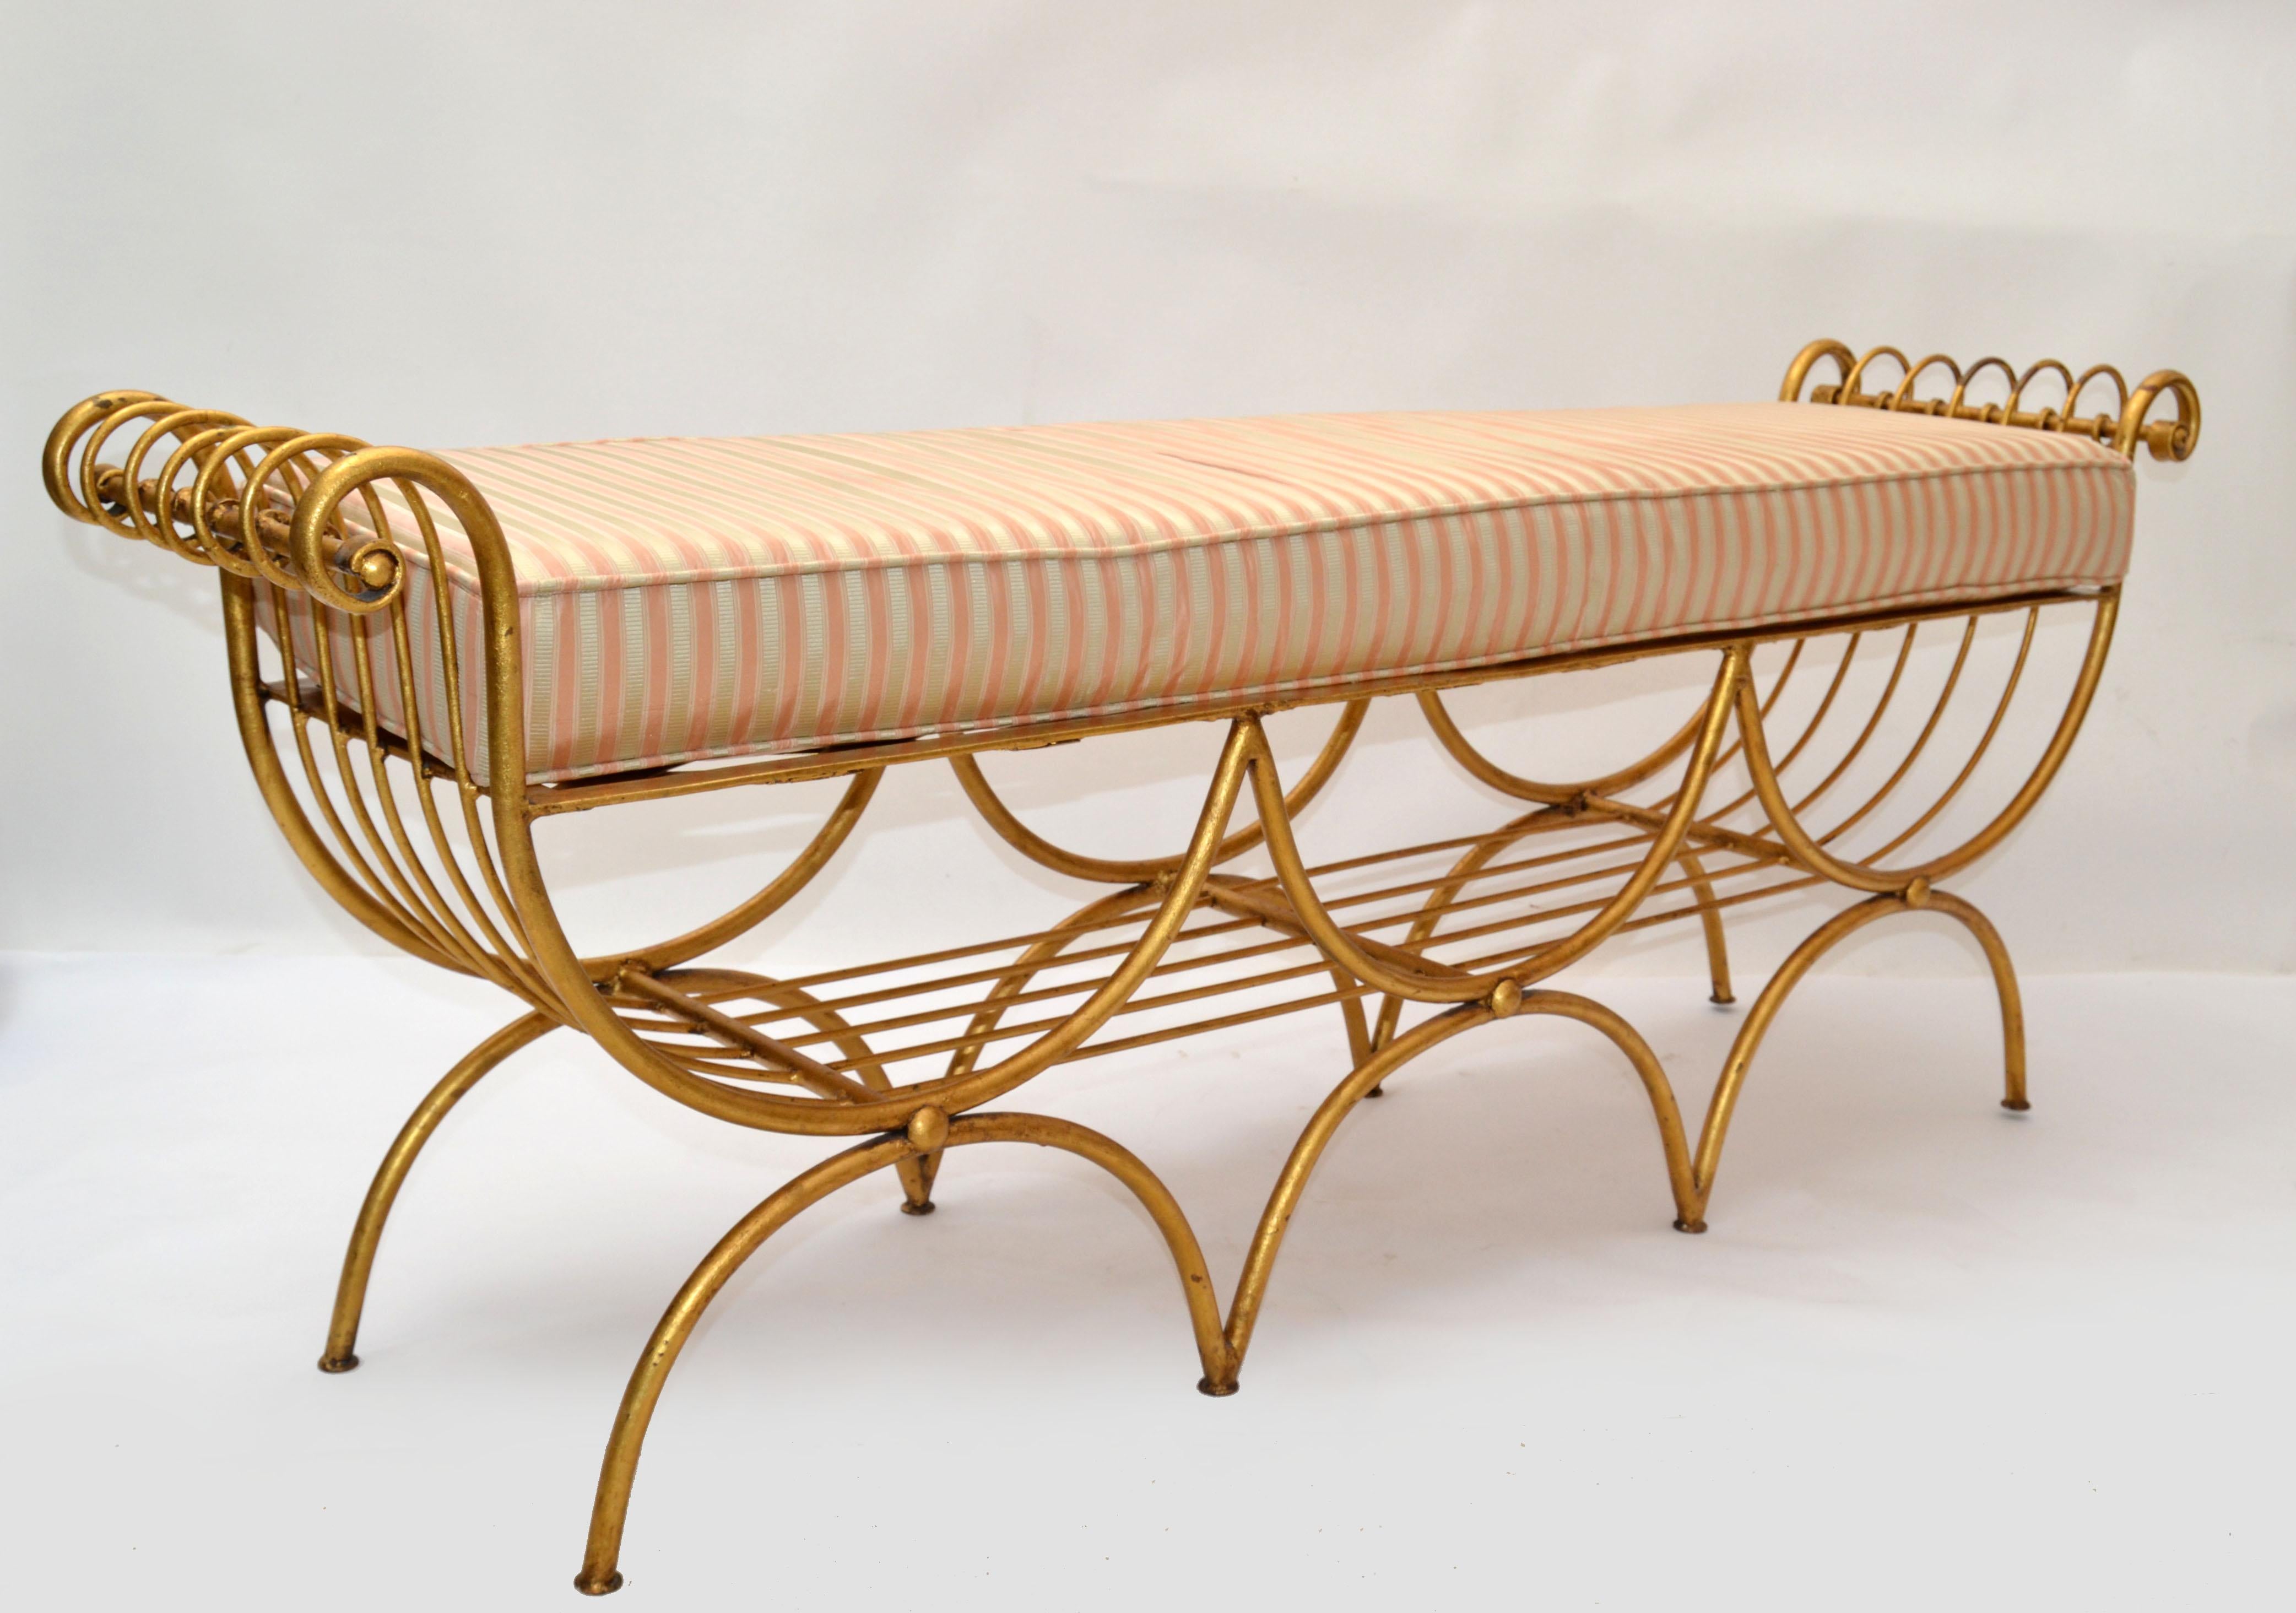 Schöne Hollywood Regency vergoldetes Schmiedeeisen und Stahl curule 3-Sitzer Long Bench aus den späten 1950, aus Italien.
Halbkreisförmige Stahlrohrbeine in vergoldeter Ausführung und kreuzgeflochtene Sitzfläche.
Er wird mit dem originalen